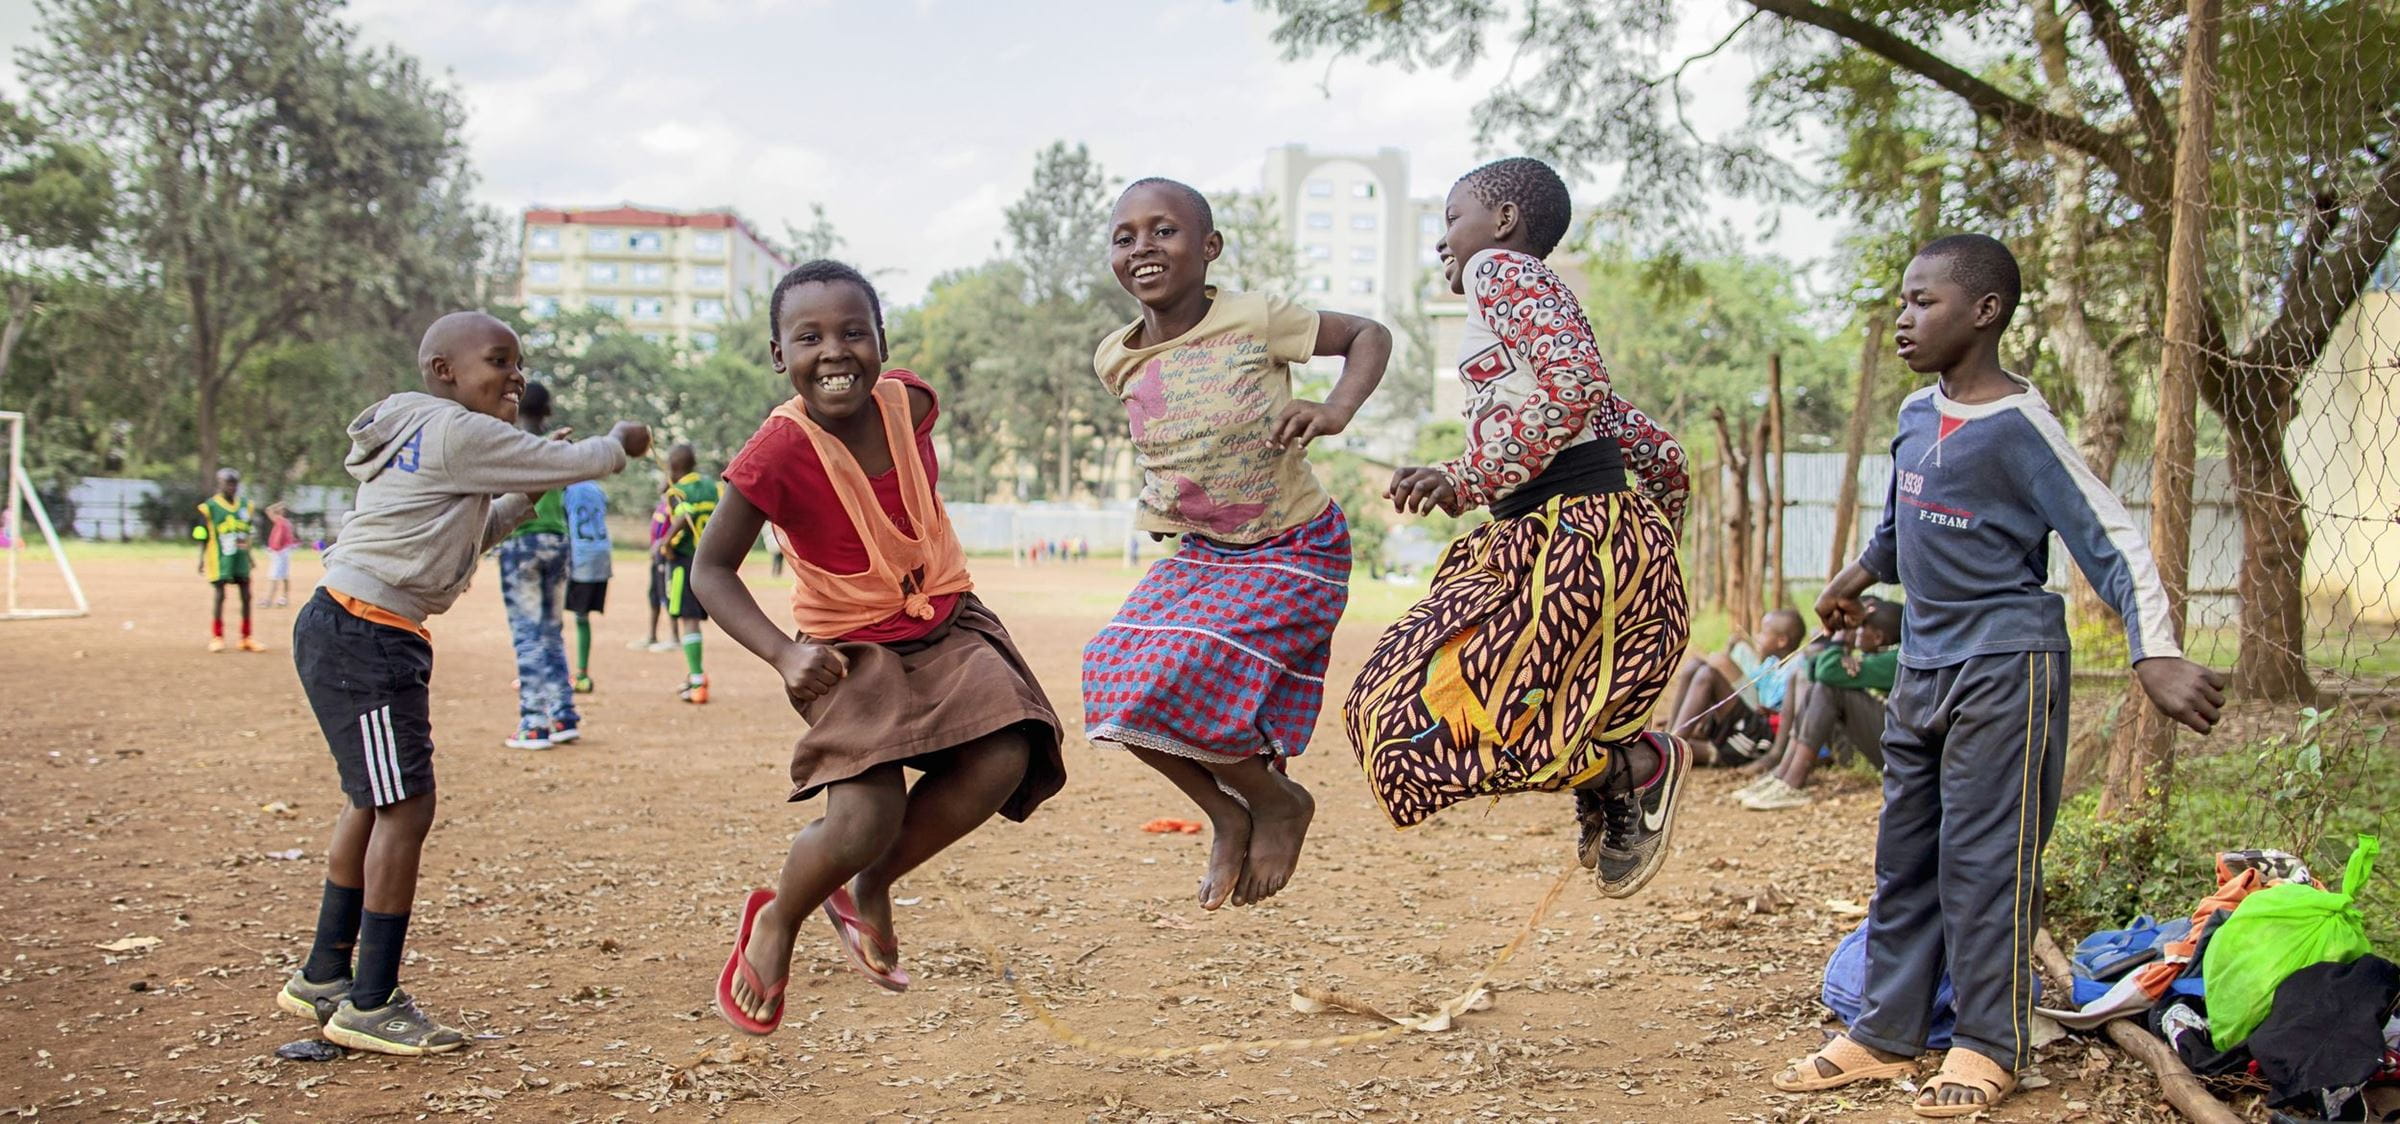 Kinder in Nairobi in Kenia springen Seil (Bild: Lars Heidrich)